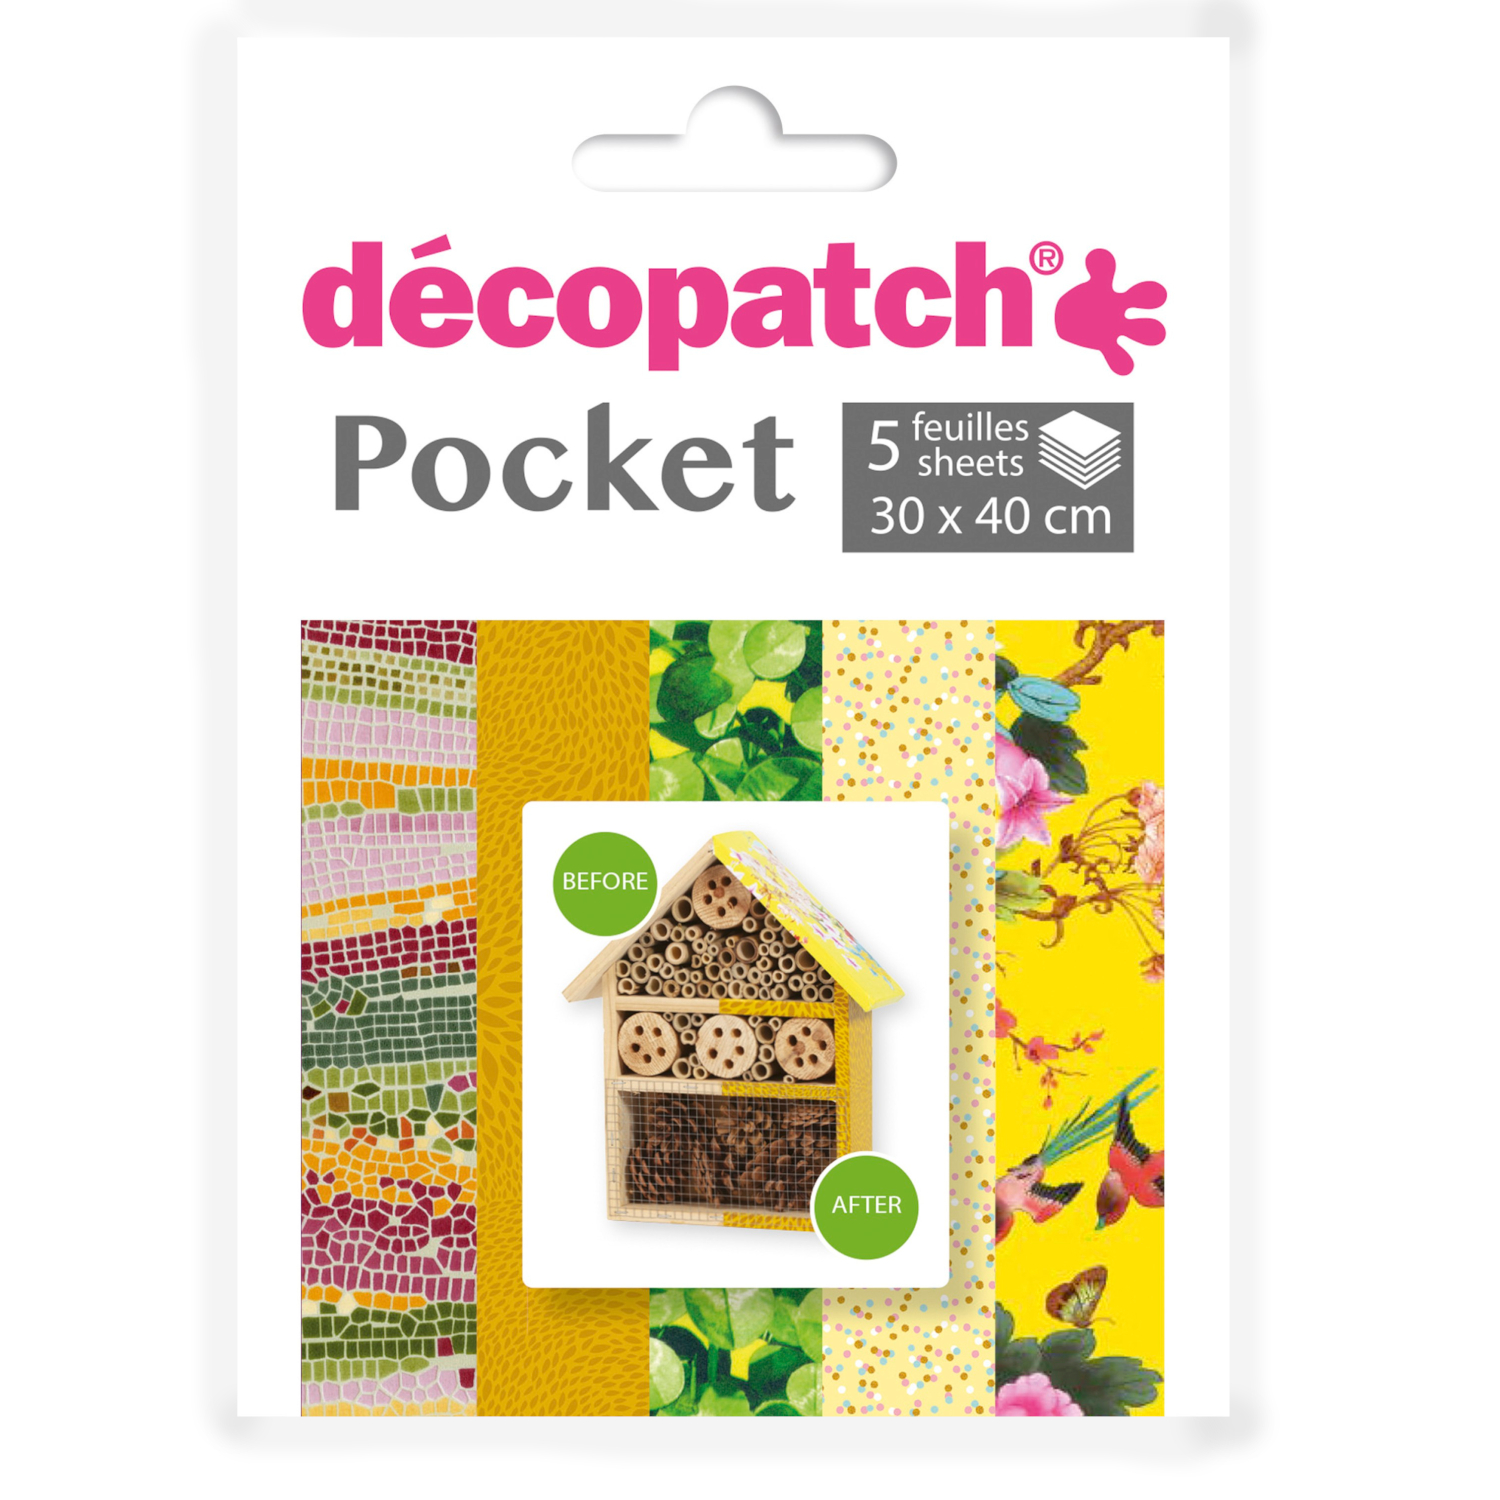 NEU Decoupage- / Decopatch-Papier Pocket-Sortierung, 5 Bogen 30 x 40 cm, Motive: 509, 654, 404, 746, 750